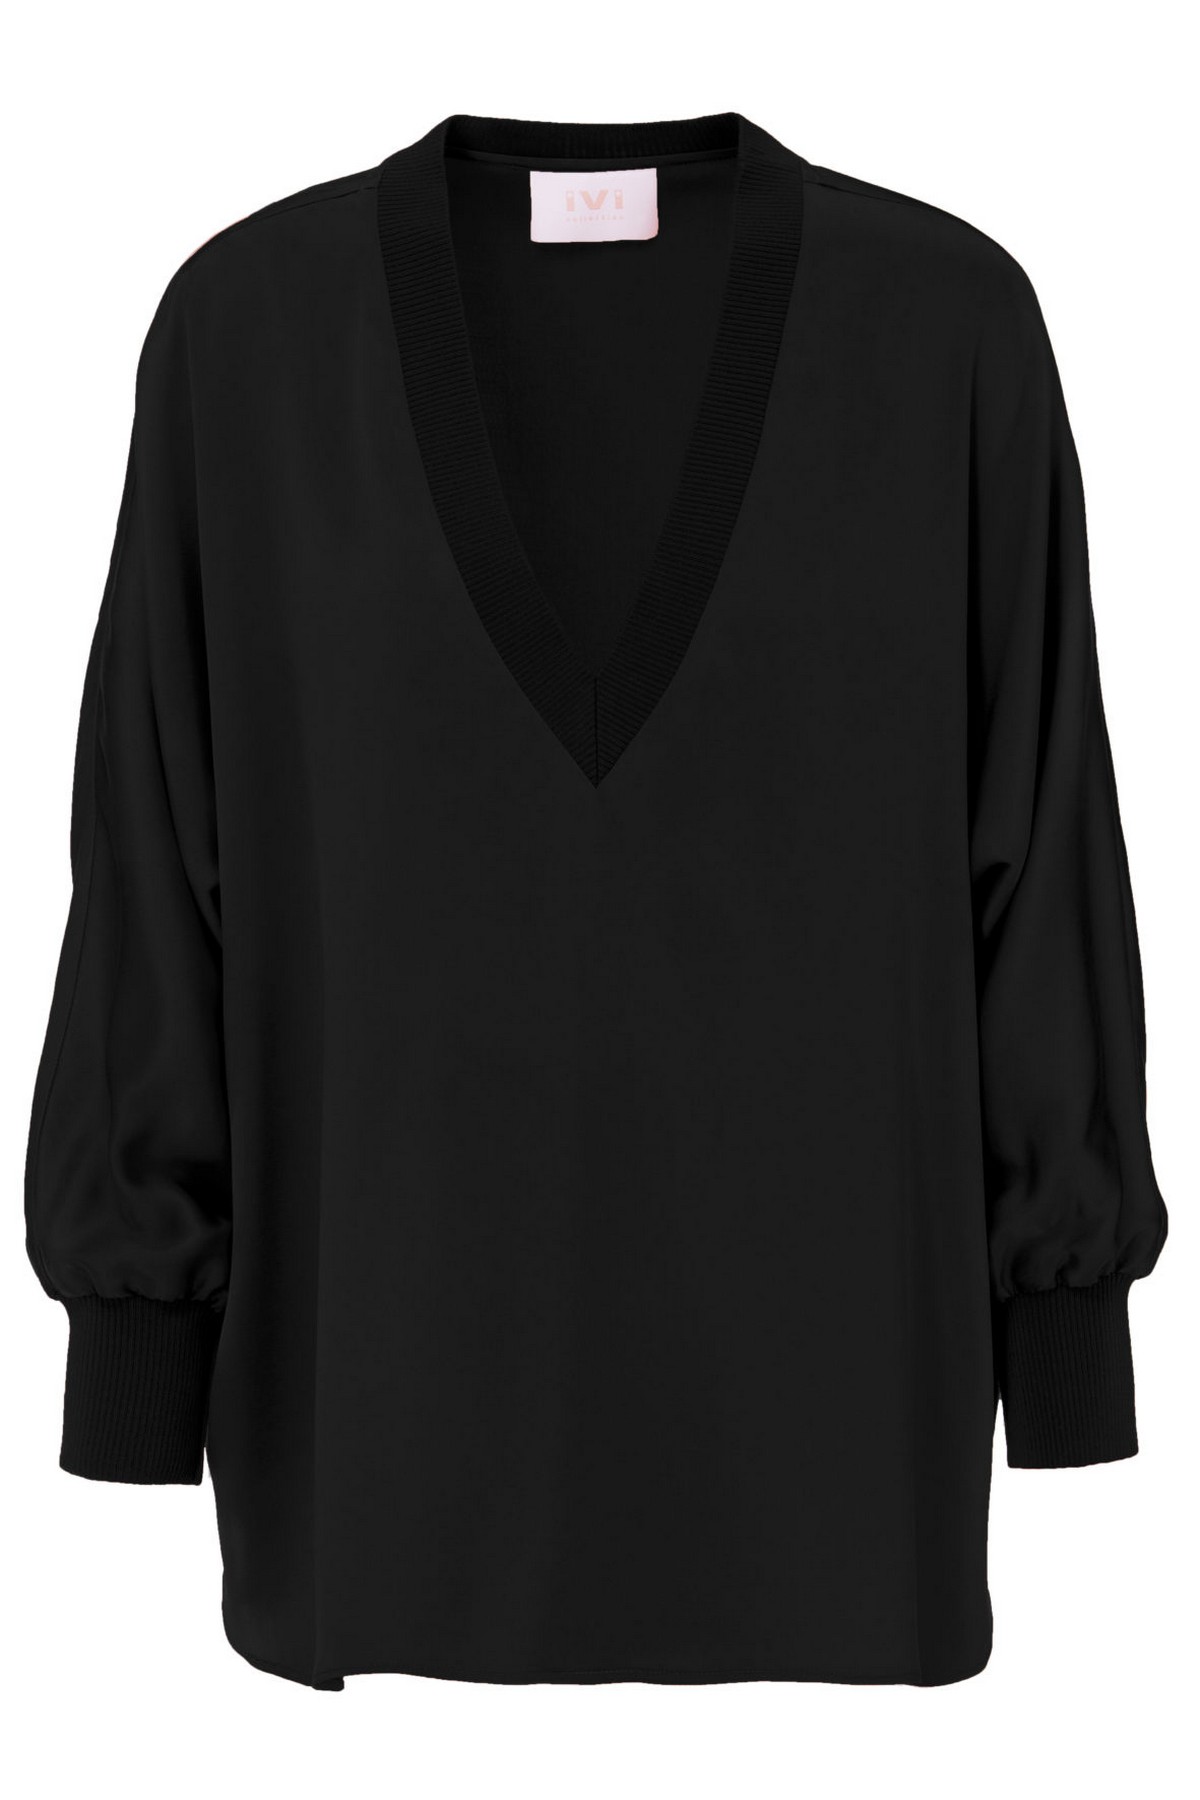 Shirtbloes V uni in de kleur zwart van het merk Ivi Collection